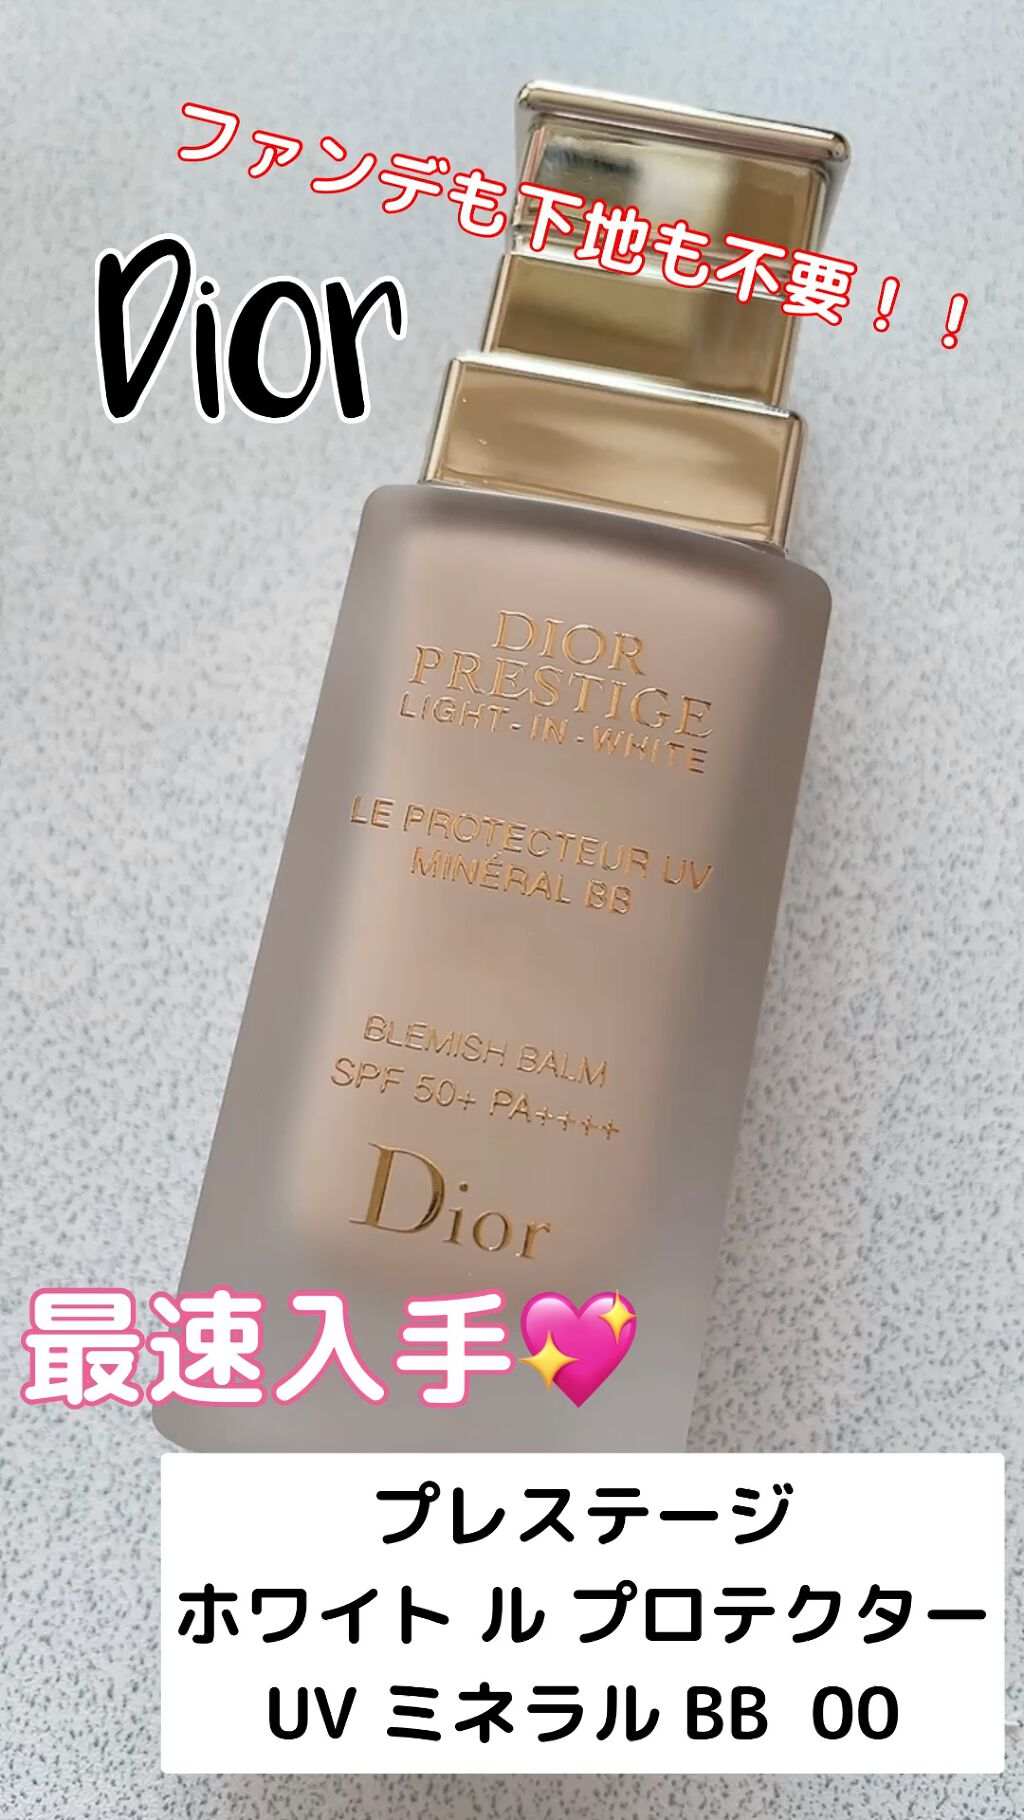 コスメ・美容Dior プレステージ ホワイト ル プロテクター UV ミネラル